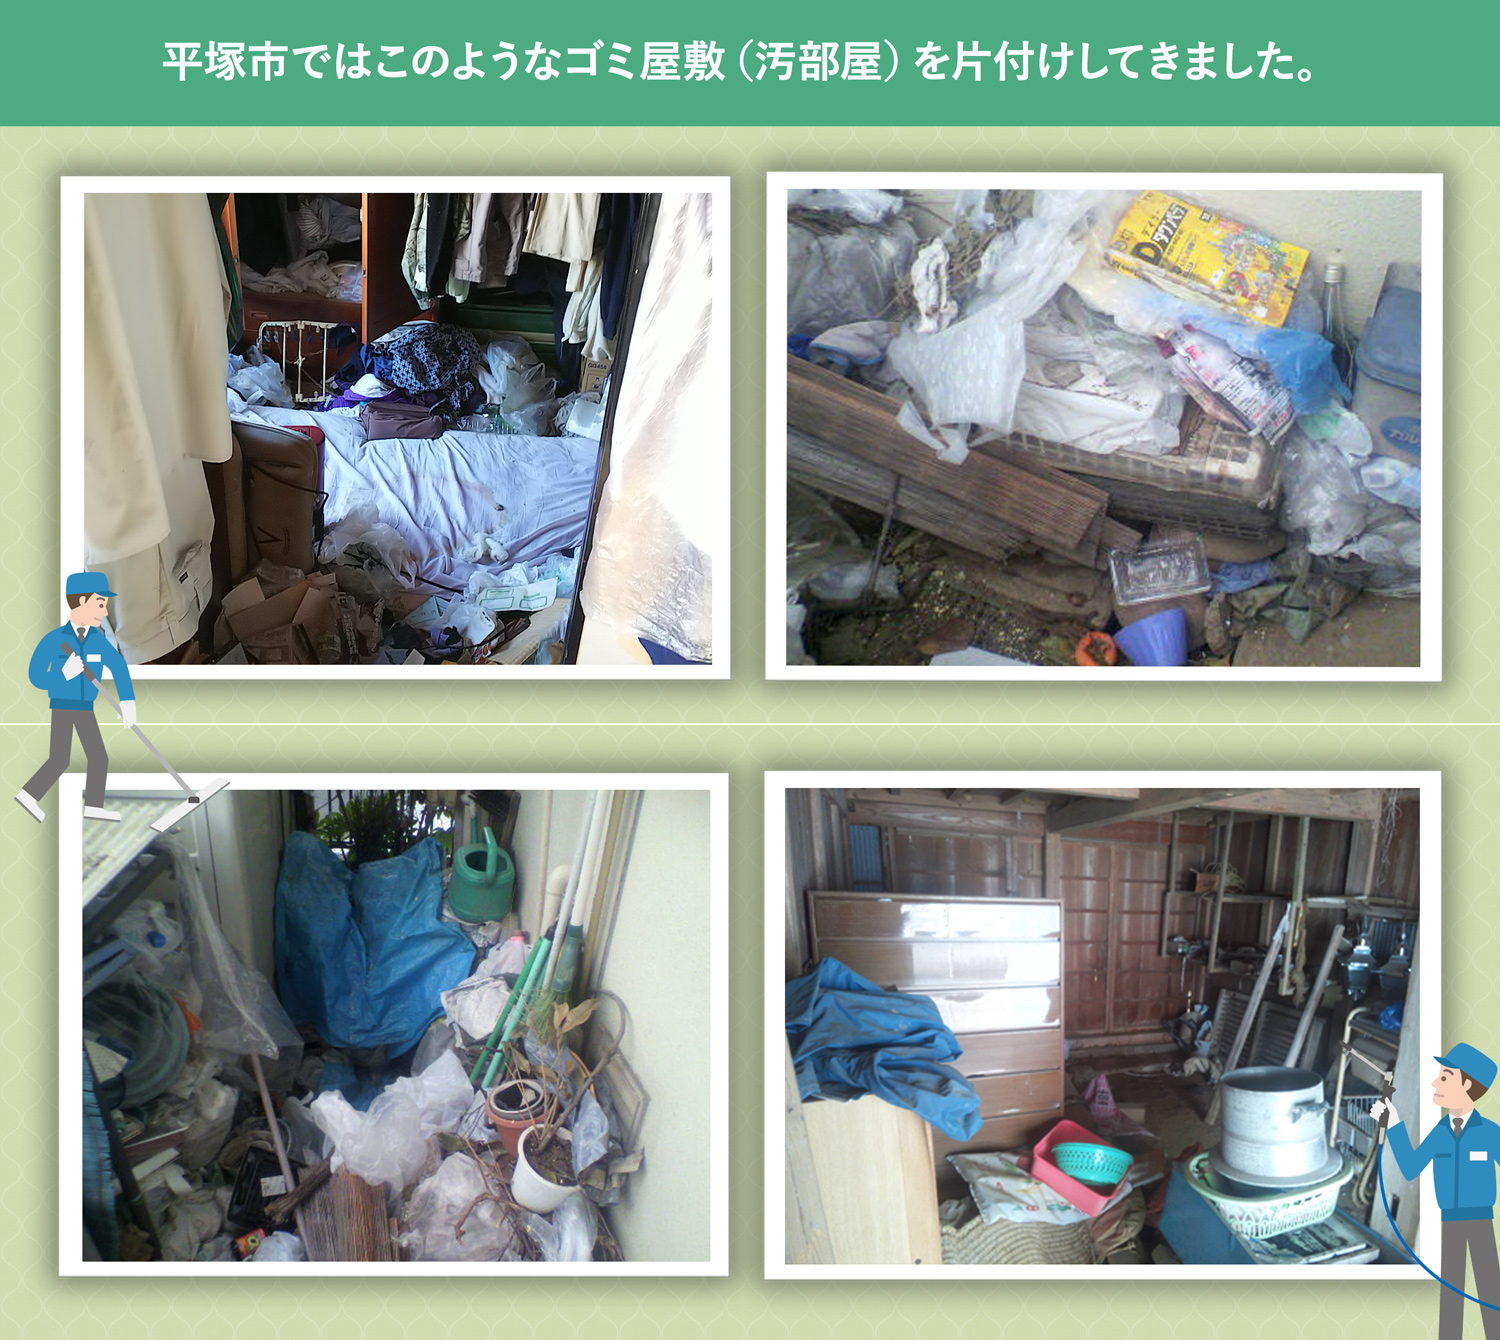 平塚市で行ったで行ったごみ屋敷・汚部屋の片付けの一例